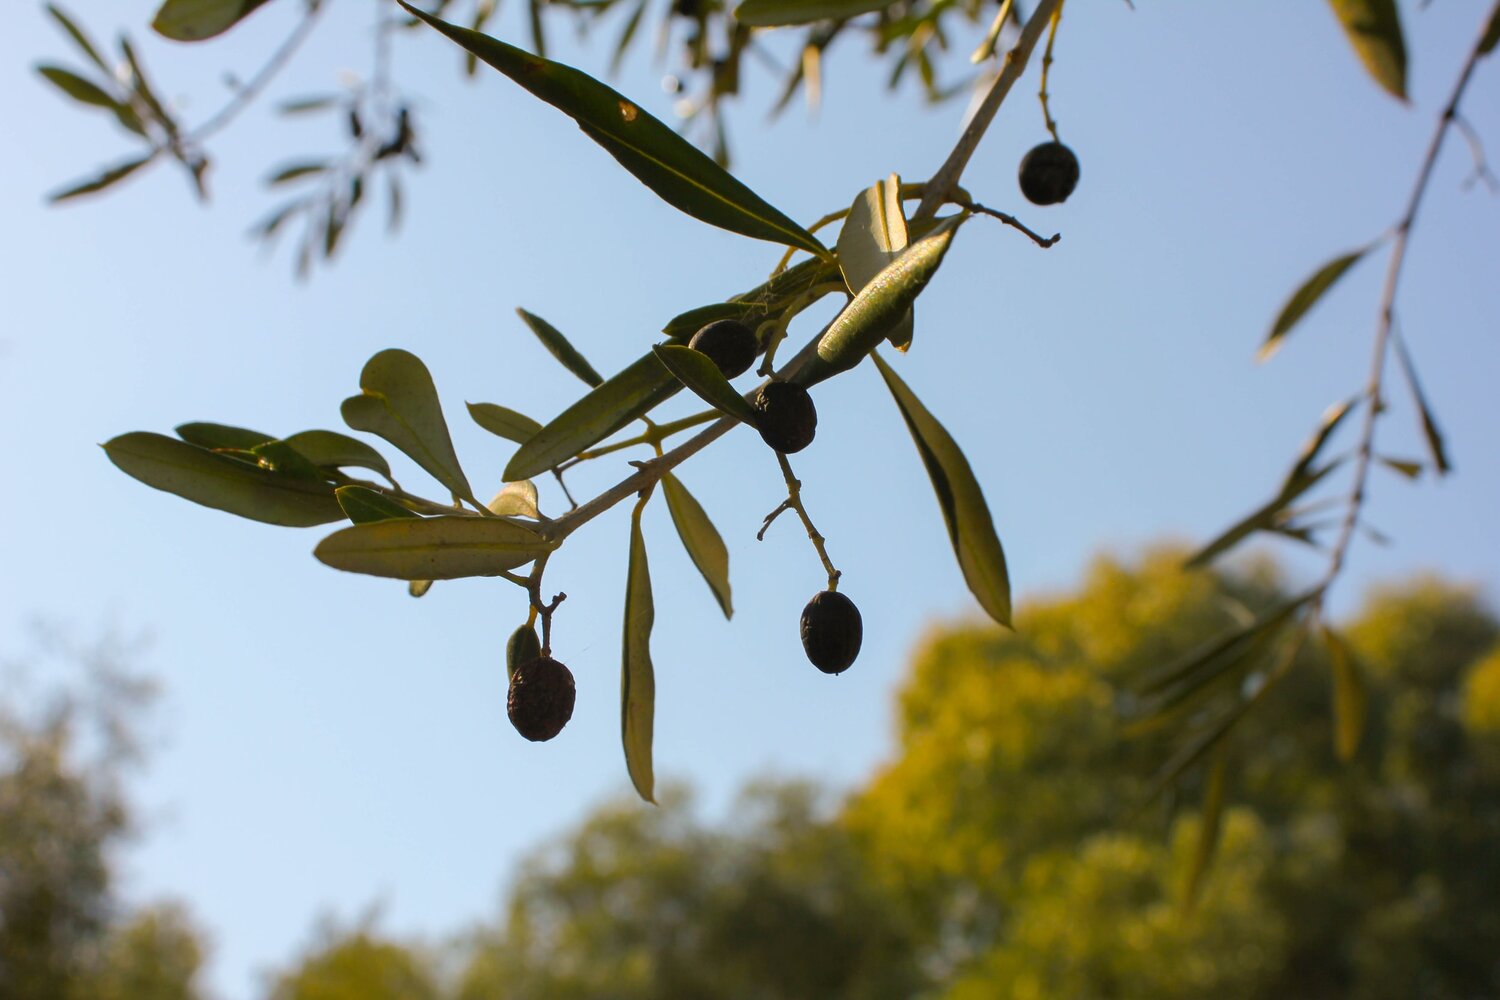 Harvesting Olives and Making Olive Oil